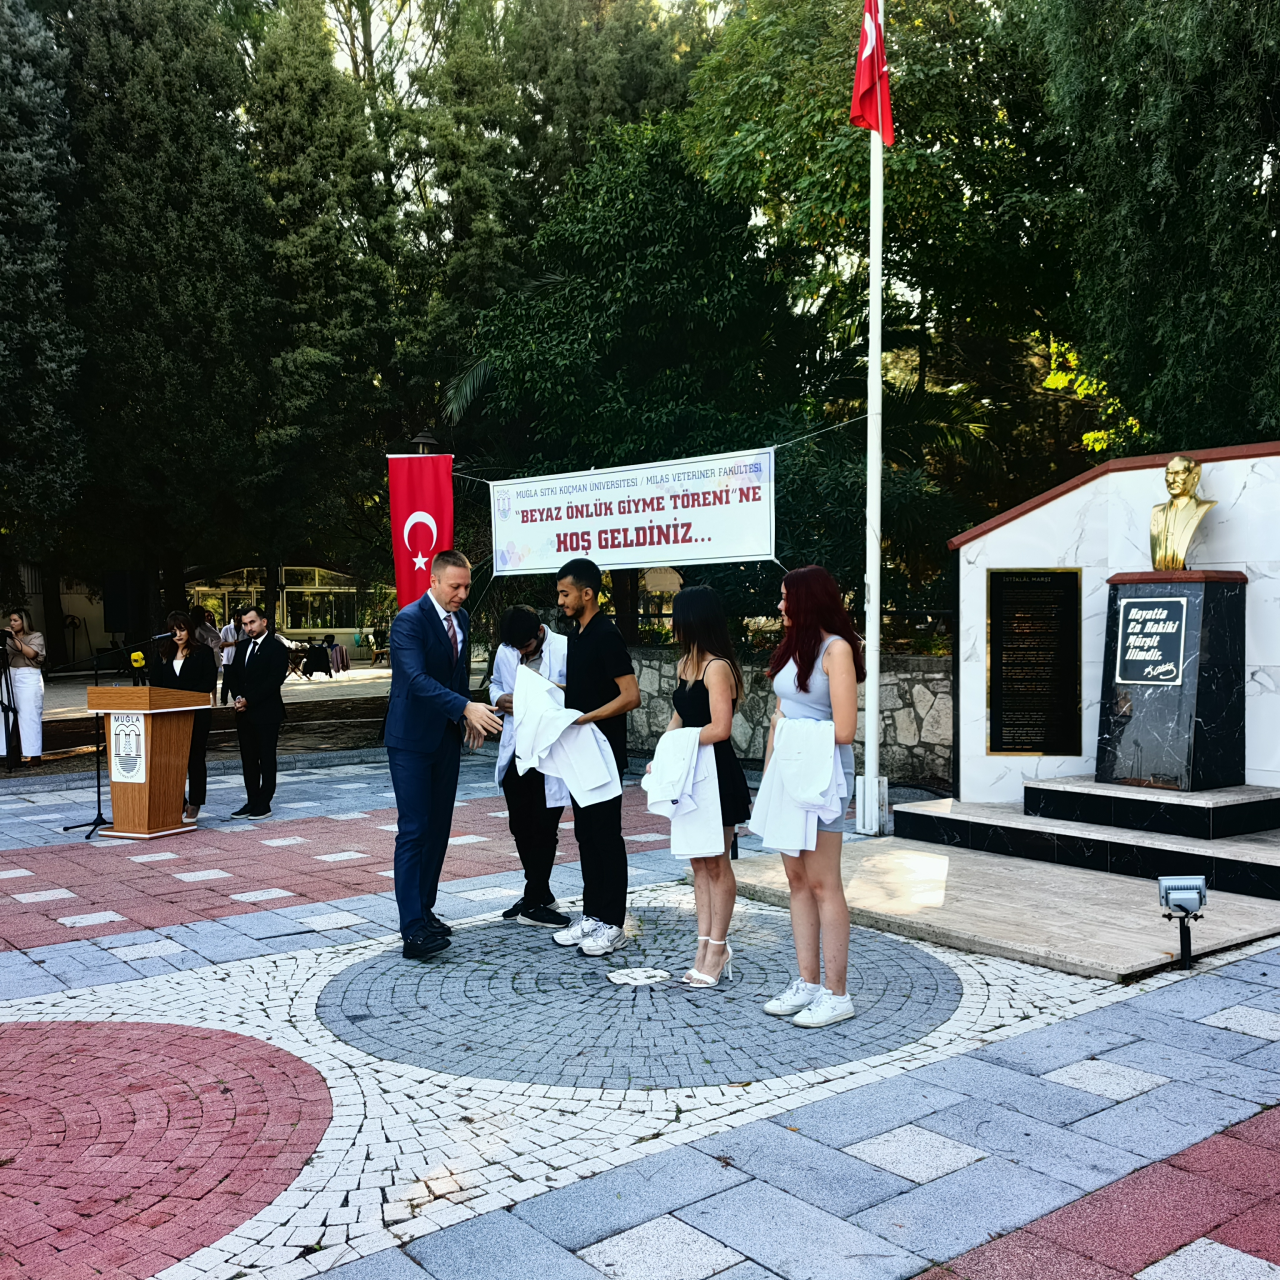 Milas Veteriner Fakültesi Beyaz Önlük Giyme, Morfoloji Binası ve Hayvan Hastanesi Geçici Hizmet Binası Açılış Töreni Gerçekleştirildi